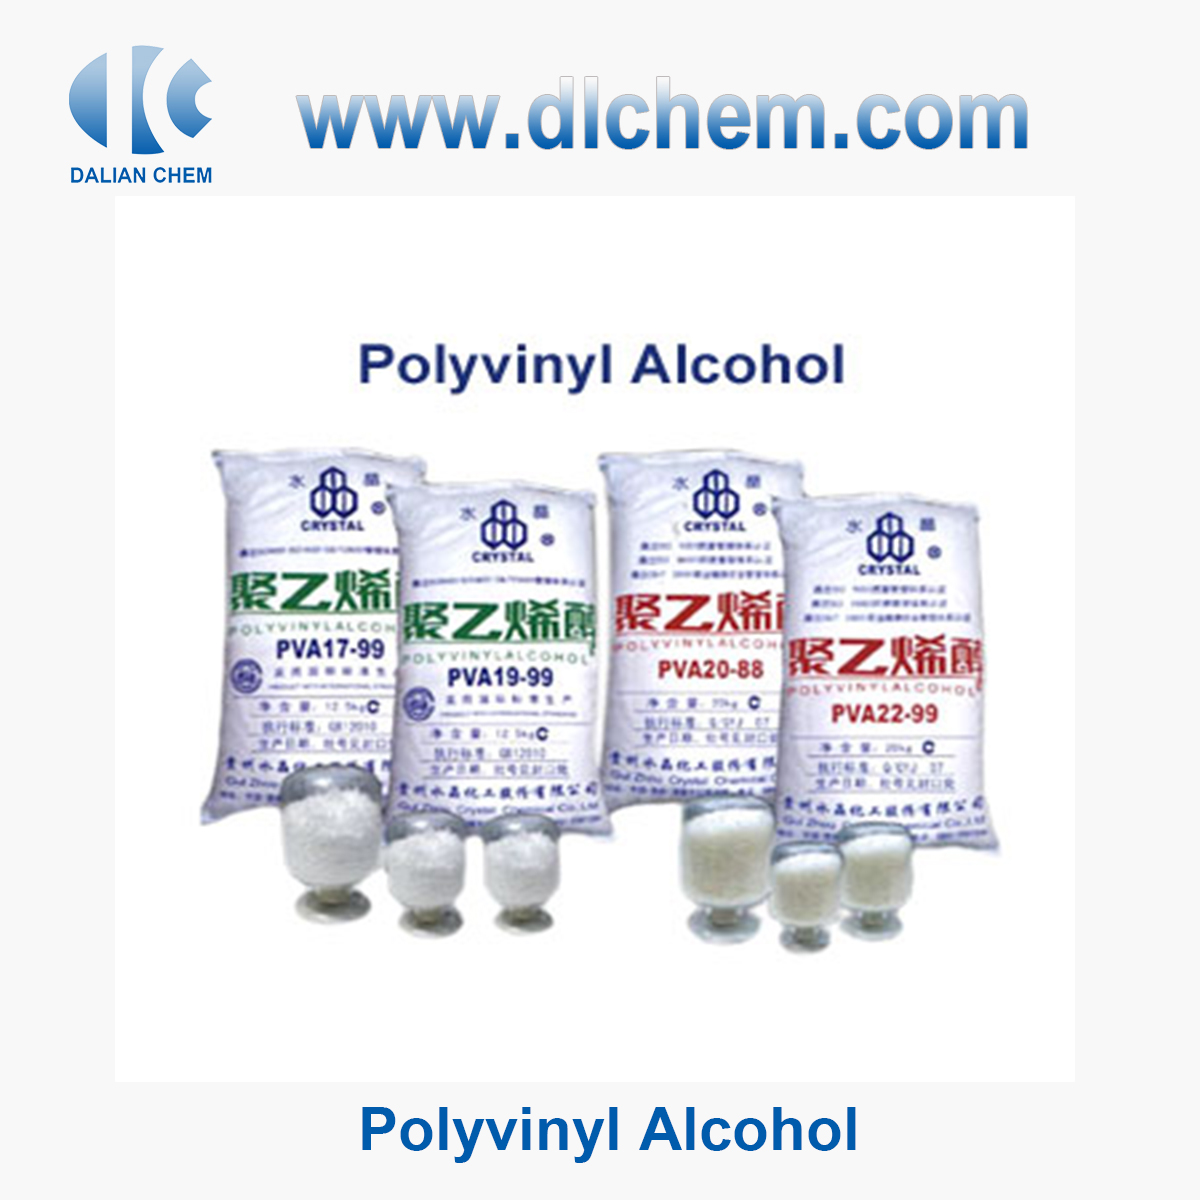 Polyvinyl Alcohol CAS No.9002-89-5